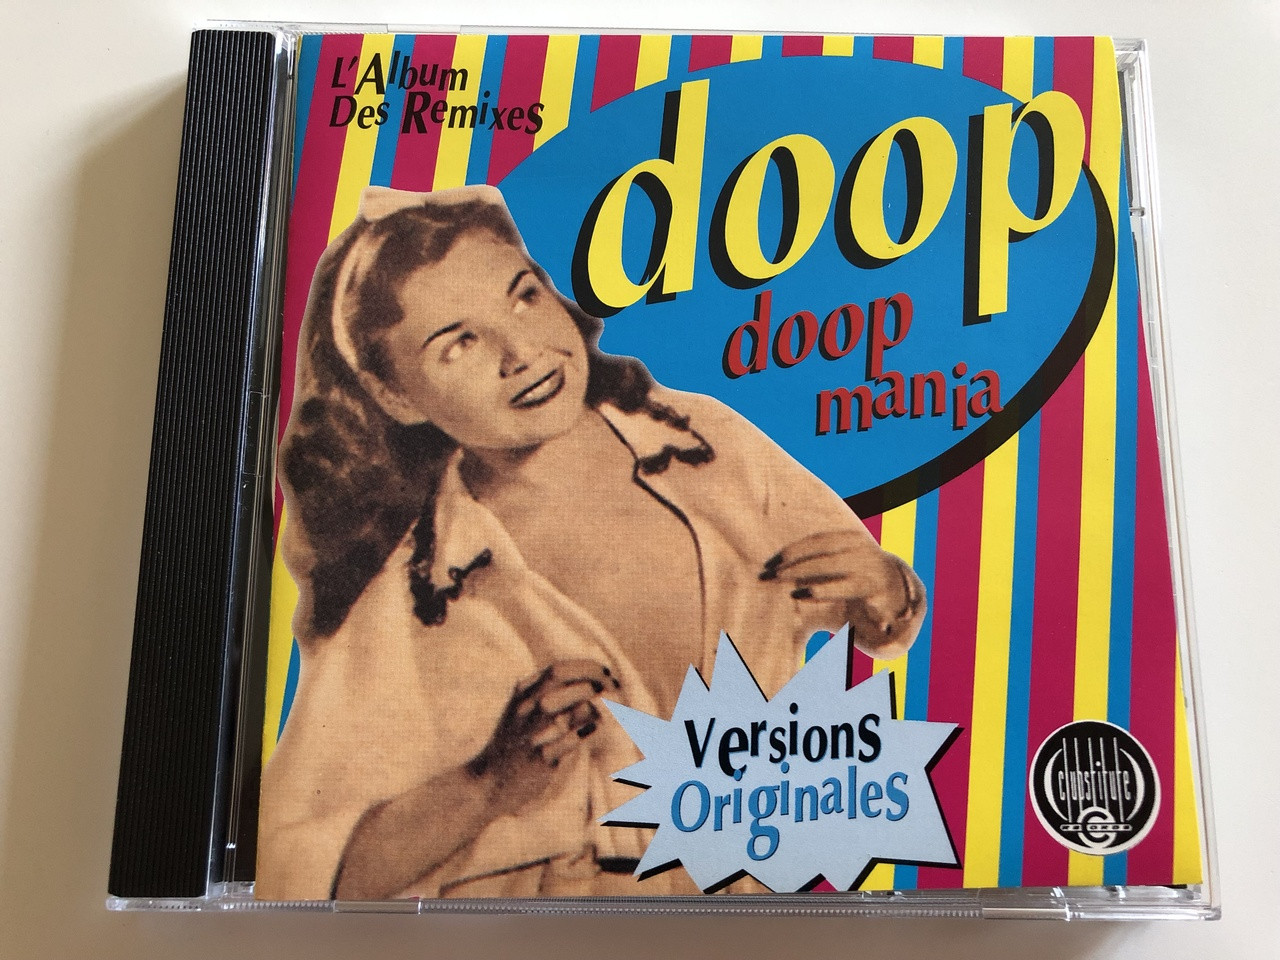 Doop ‎- Doop Mania - L'Album Des Remixes / AUDIO CD 1994 / Ferry Ridderhof  and Peter Garnefski / Version Originales - bibleinmylanguage